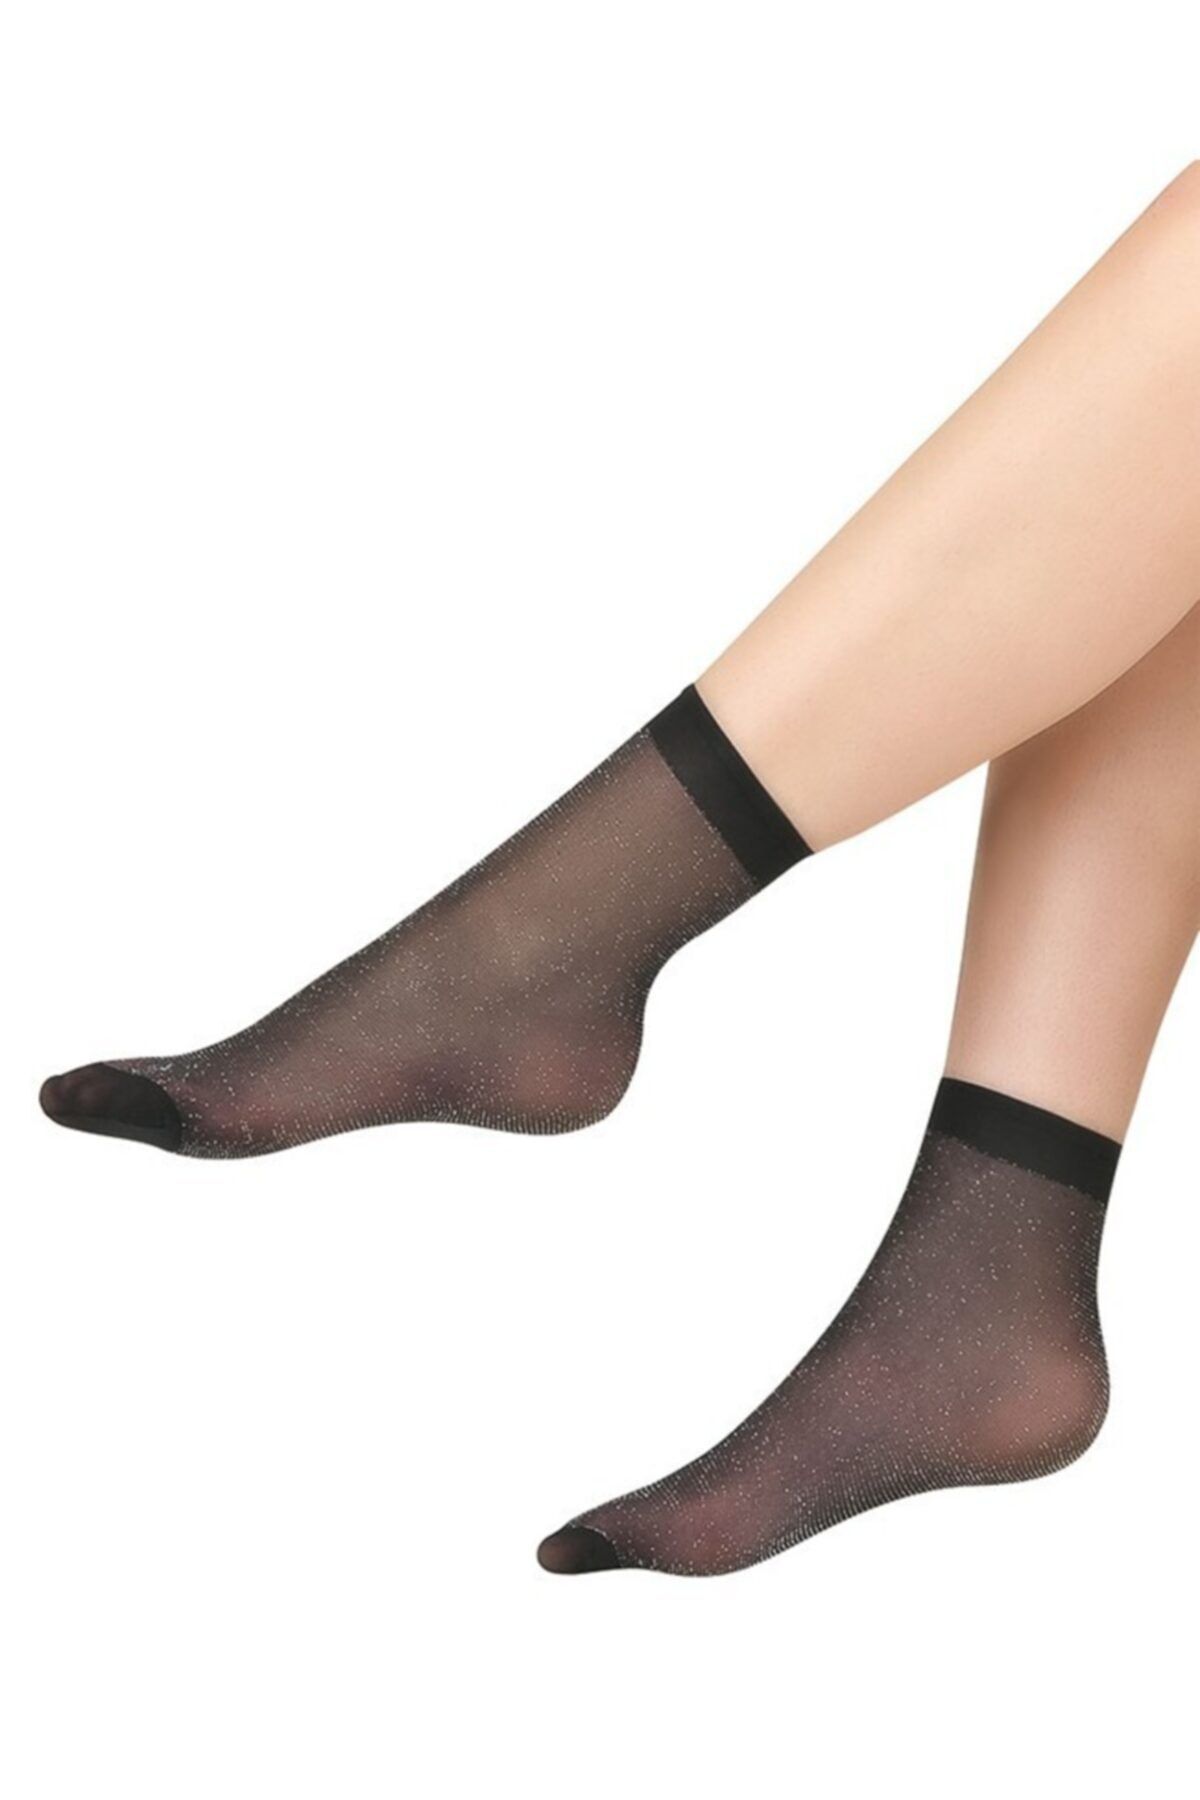 İTALİANA İtaliana 1247 Kadın Simli Soket Çorap